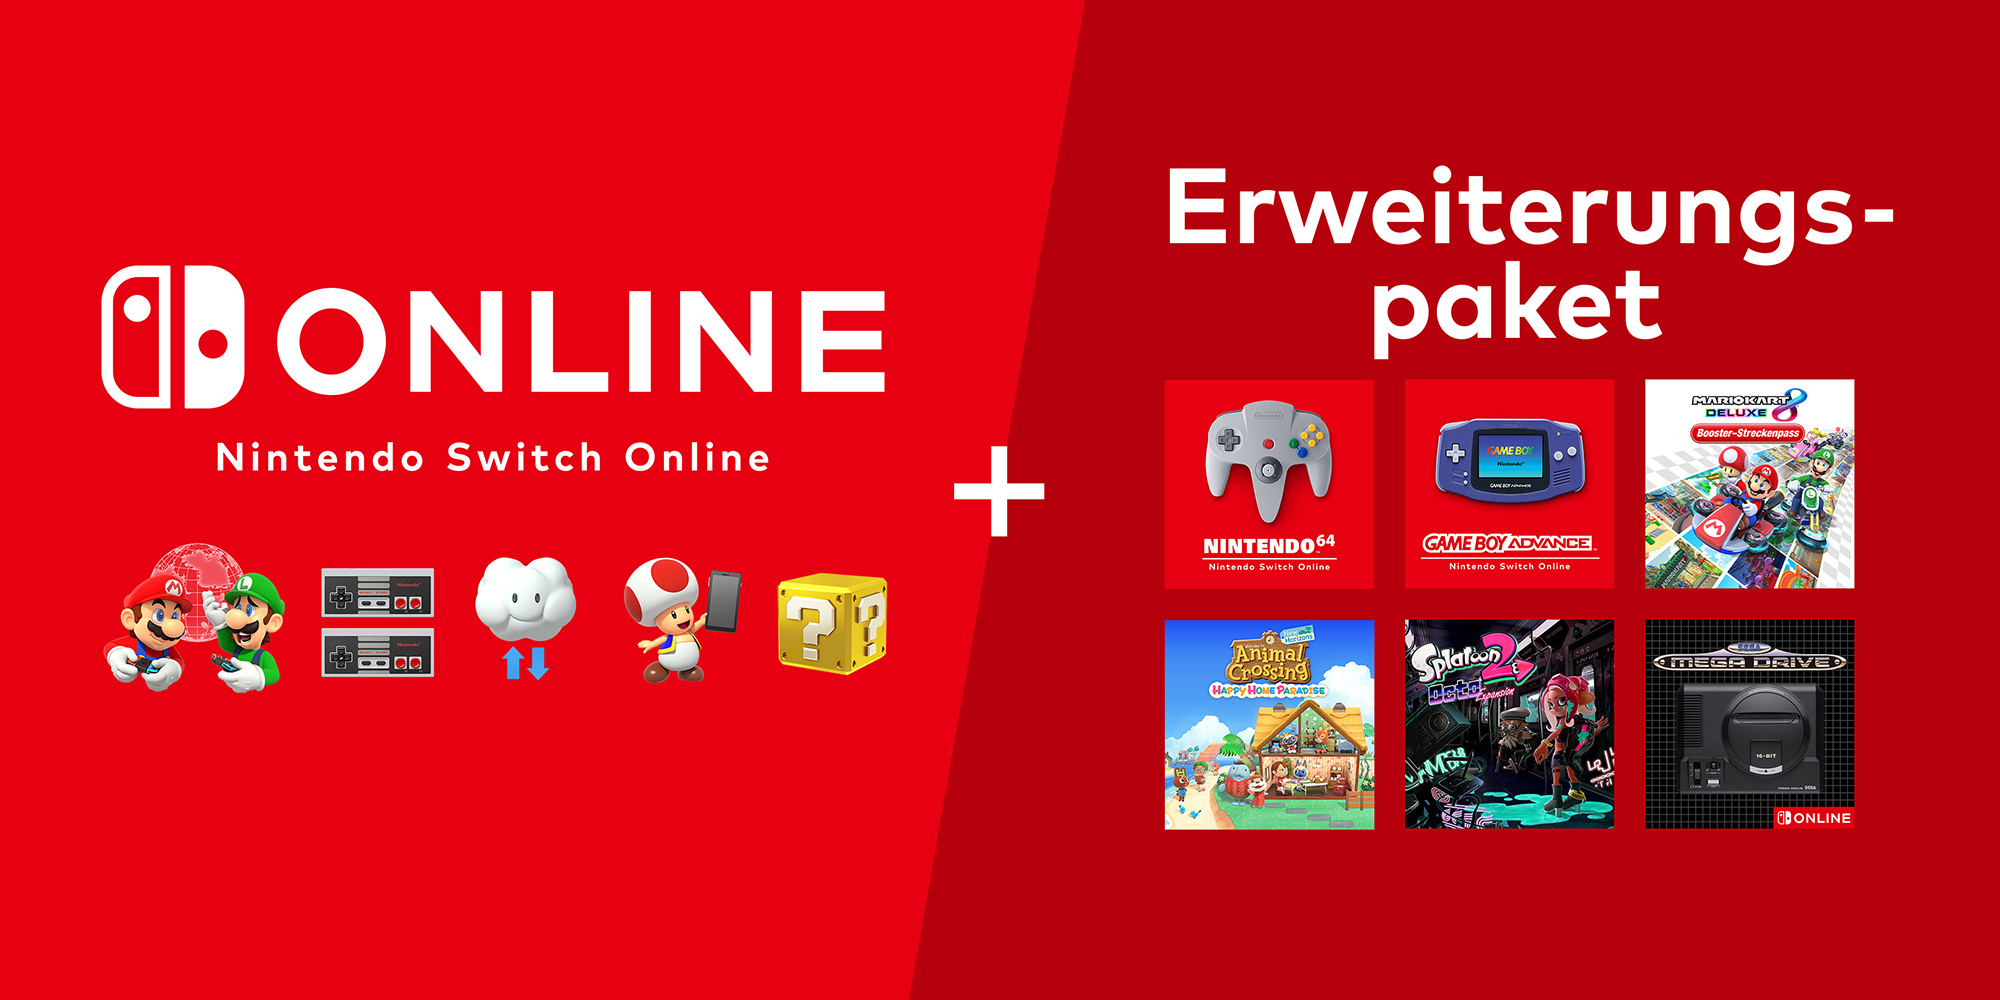 Nintendo Switch Online + Erweiterungspaket Nintendo Nintendo Switch | Online 